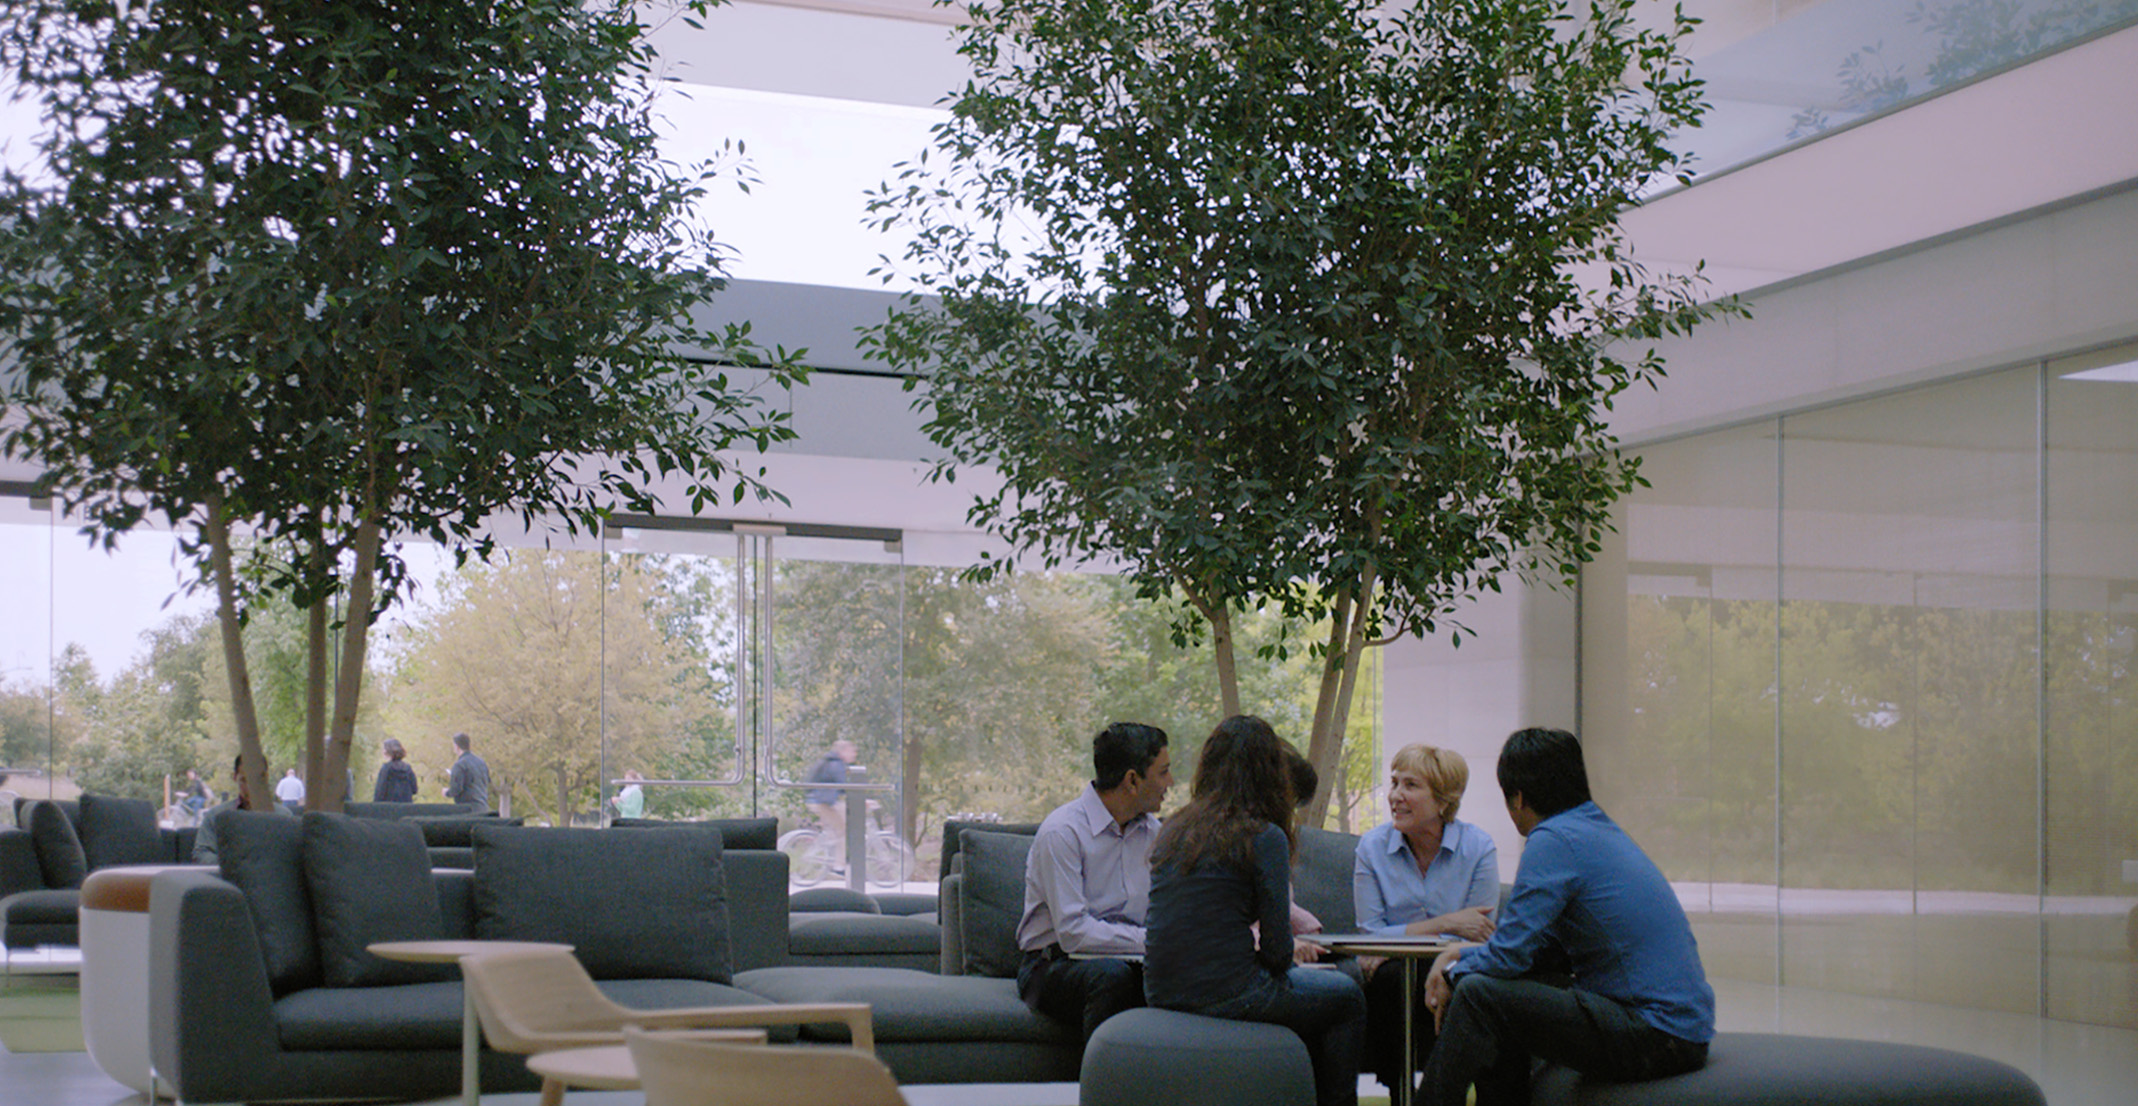 Giulia, que lidera uma equipa de processamento de linguagem natural, está sentada a uma mesa juntamente com outros funcionários da Apple.